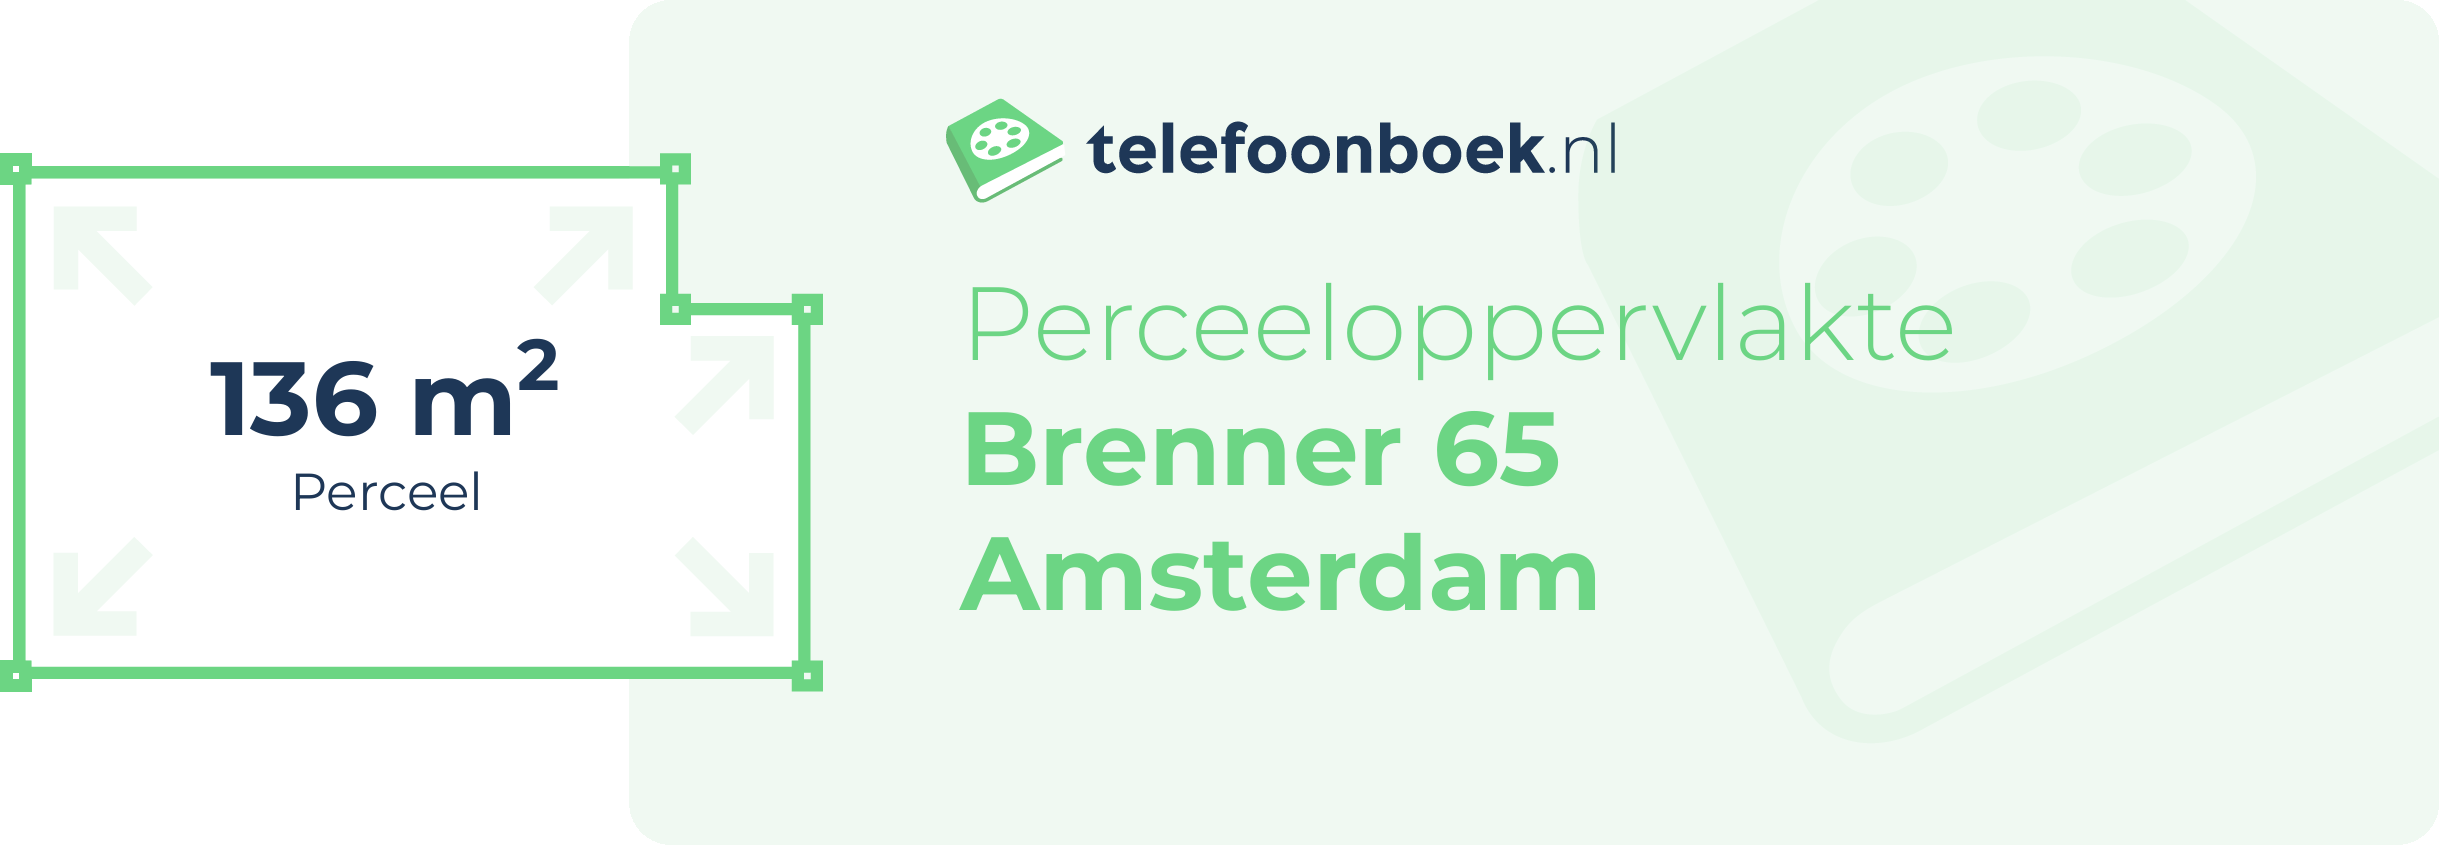 Perceeloppervlakte Brenner 65 Amsterdam